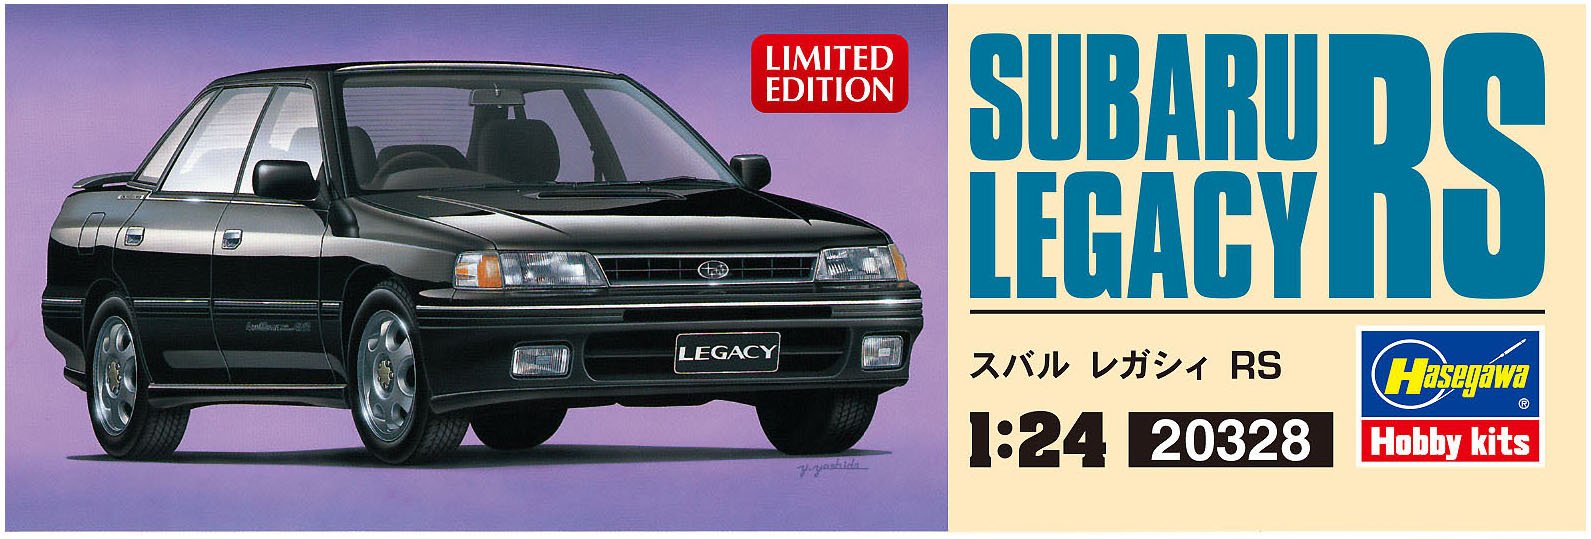 HASEGAWA 20328 Subaru Legacy Rs 1/24 Scale Kit